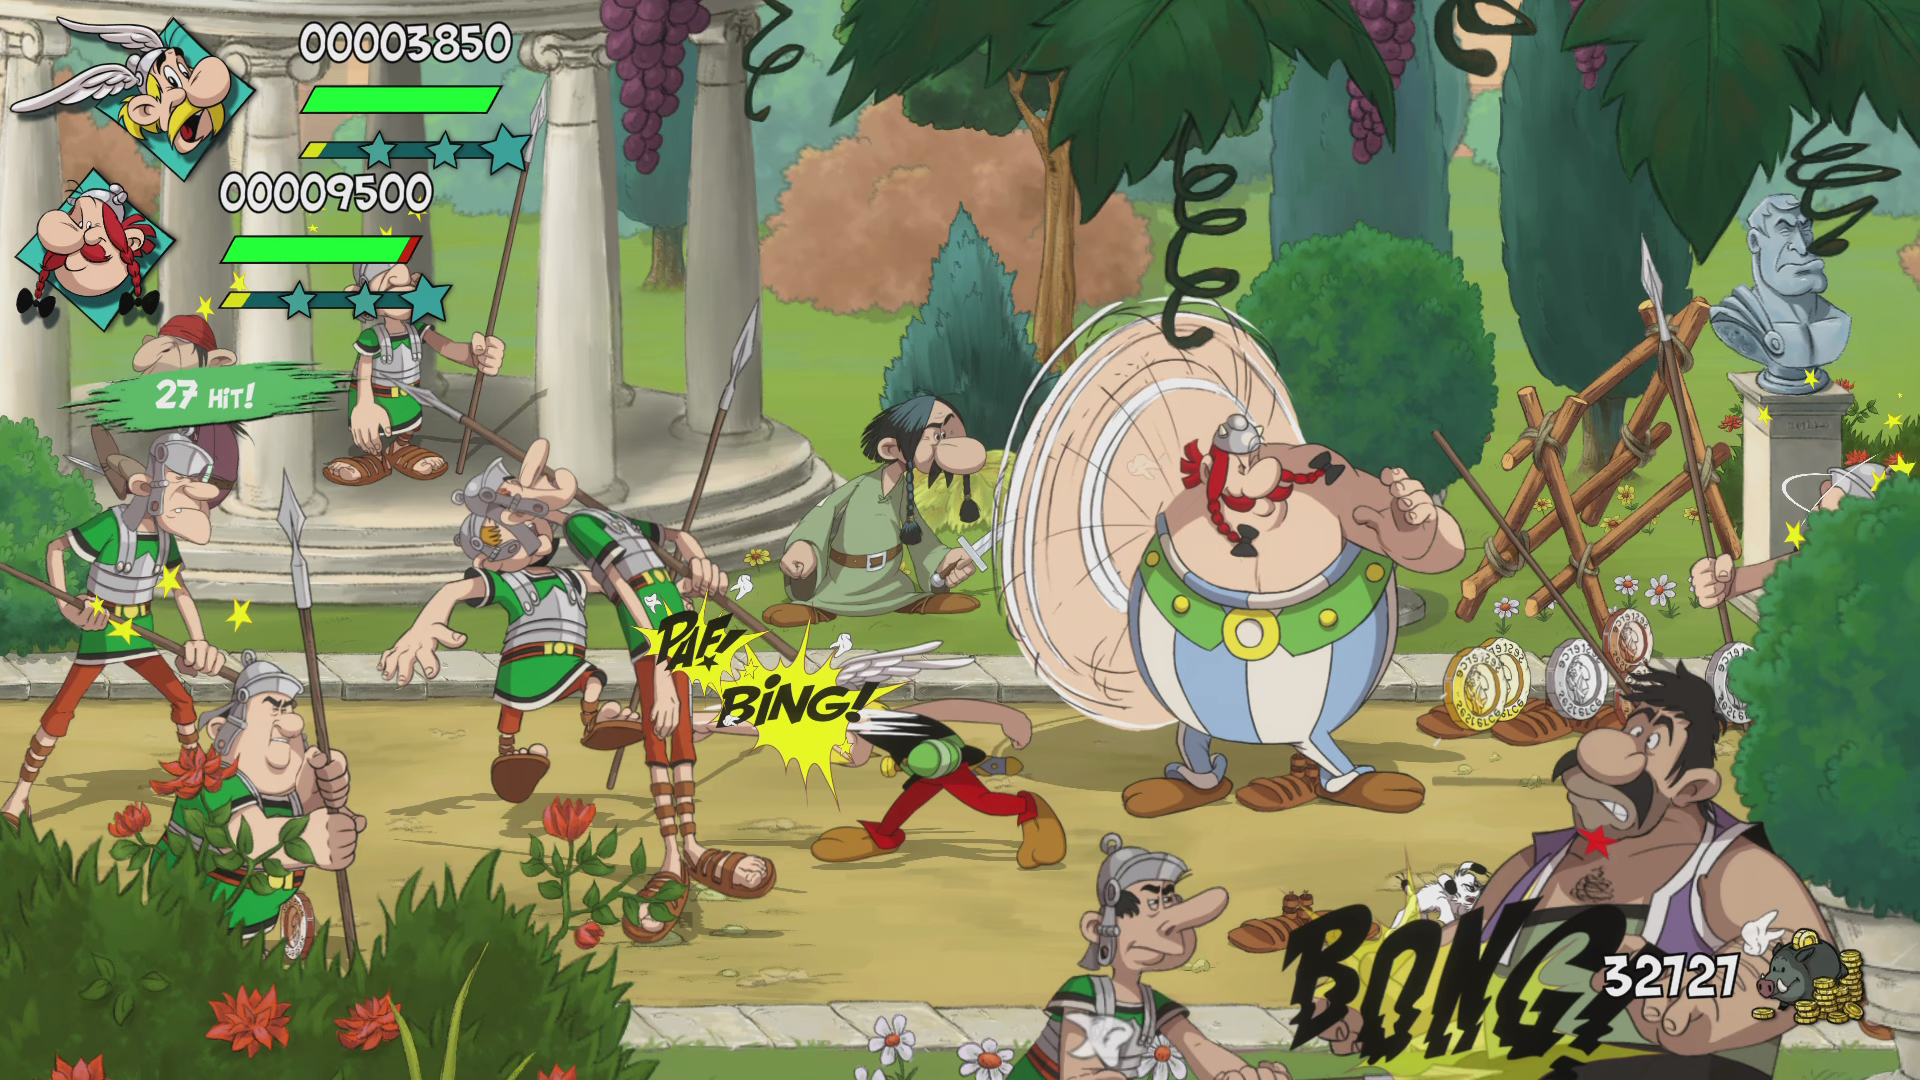 - Slap all! & them Asterix Obelix 5] [PlayStation - 2